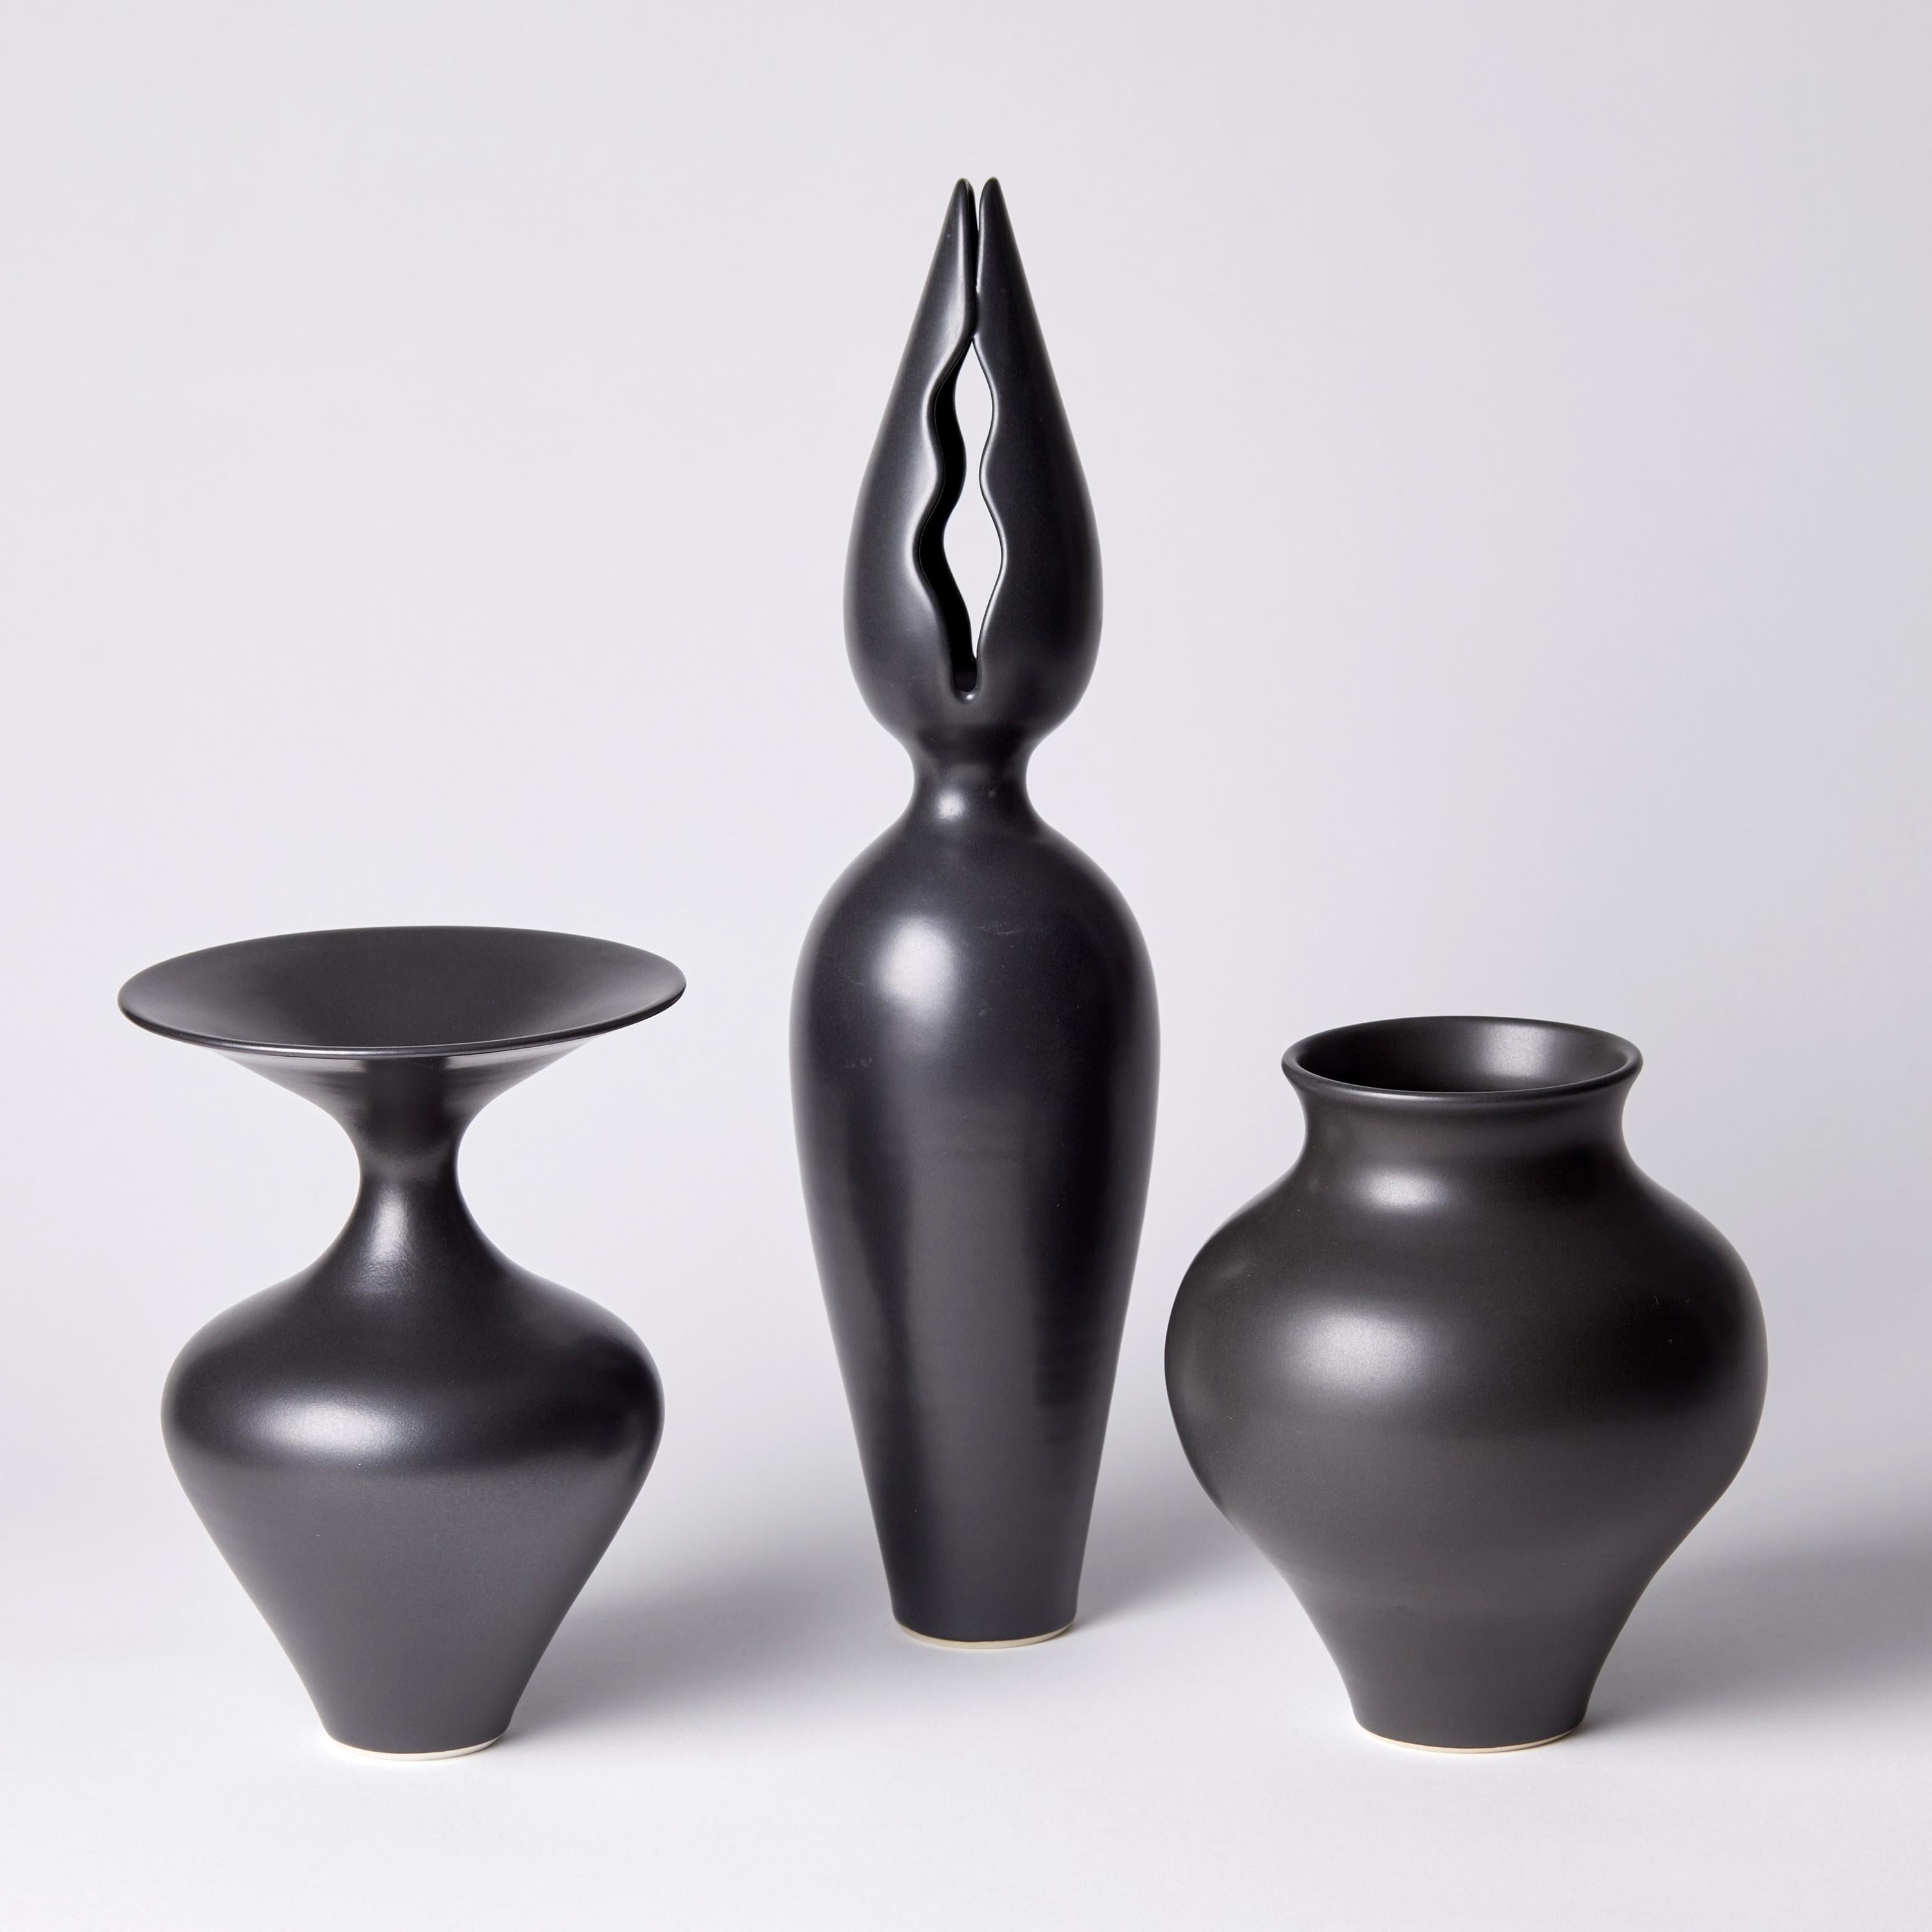 Organic Modern Black Classic Vase, a Unique Black / Ebony Porcelain Vase by Vivienne Foley